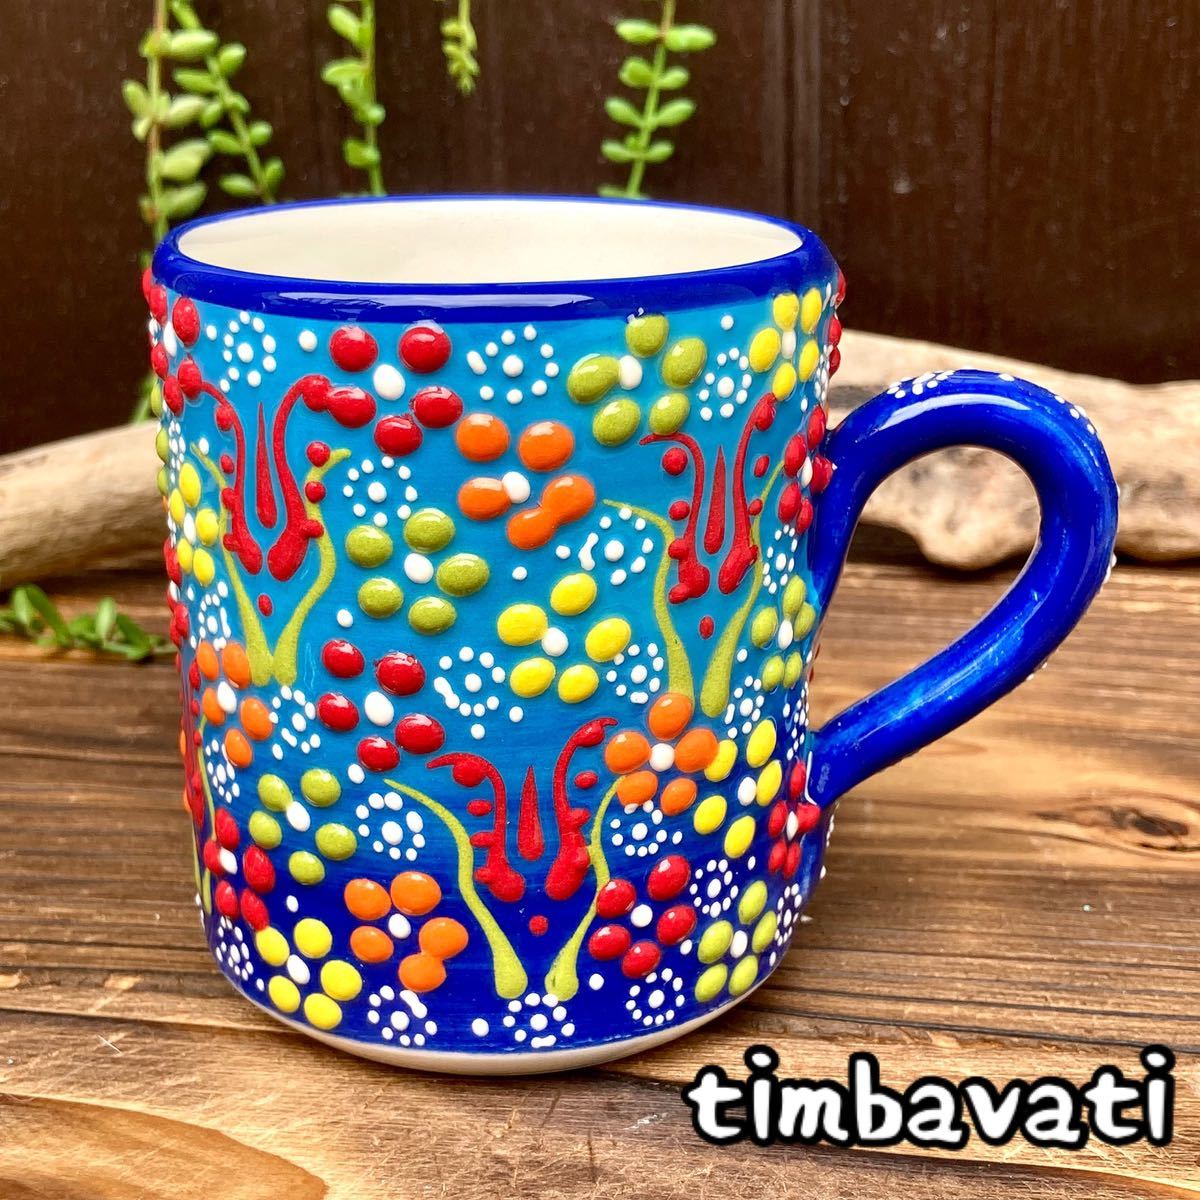 ☆Nuevo☆ Taza de cerámica turca *Azul claro* Cerámica Kyutahya hecha a mano [Envío gratis con condiciones] 156, utensilios de té, Taza, Hecho de cerámica